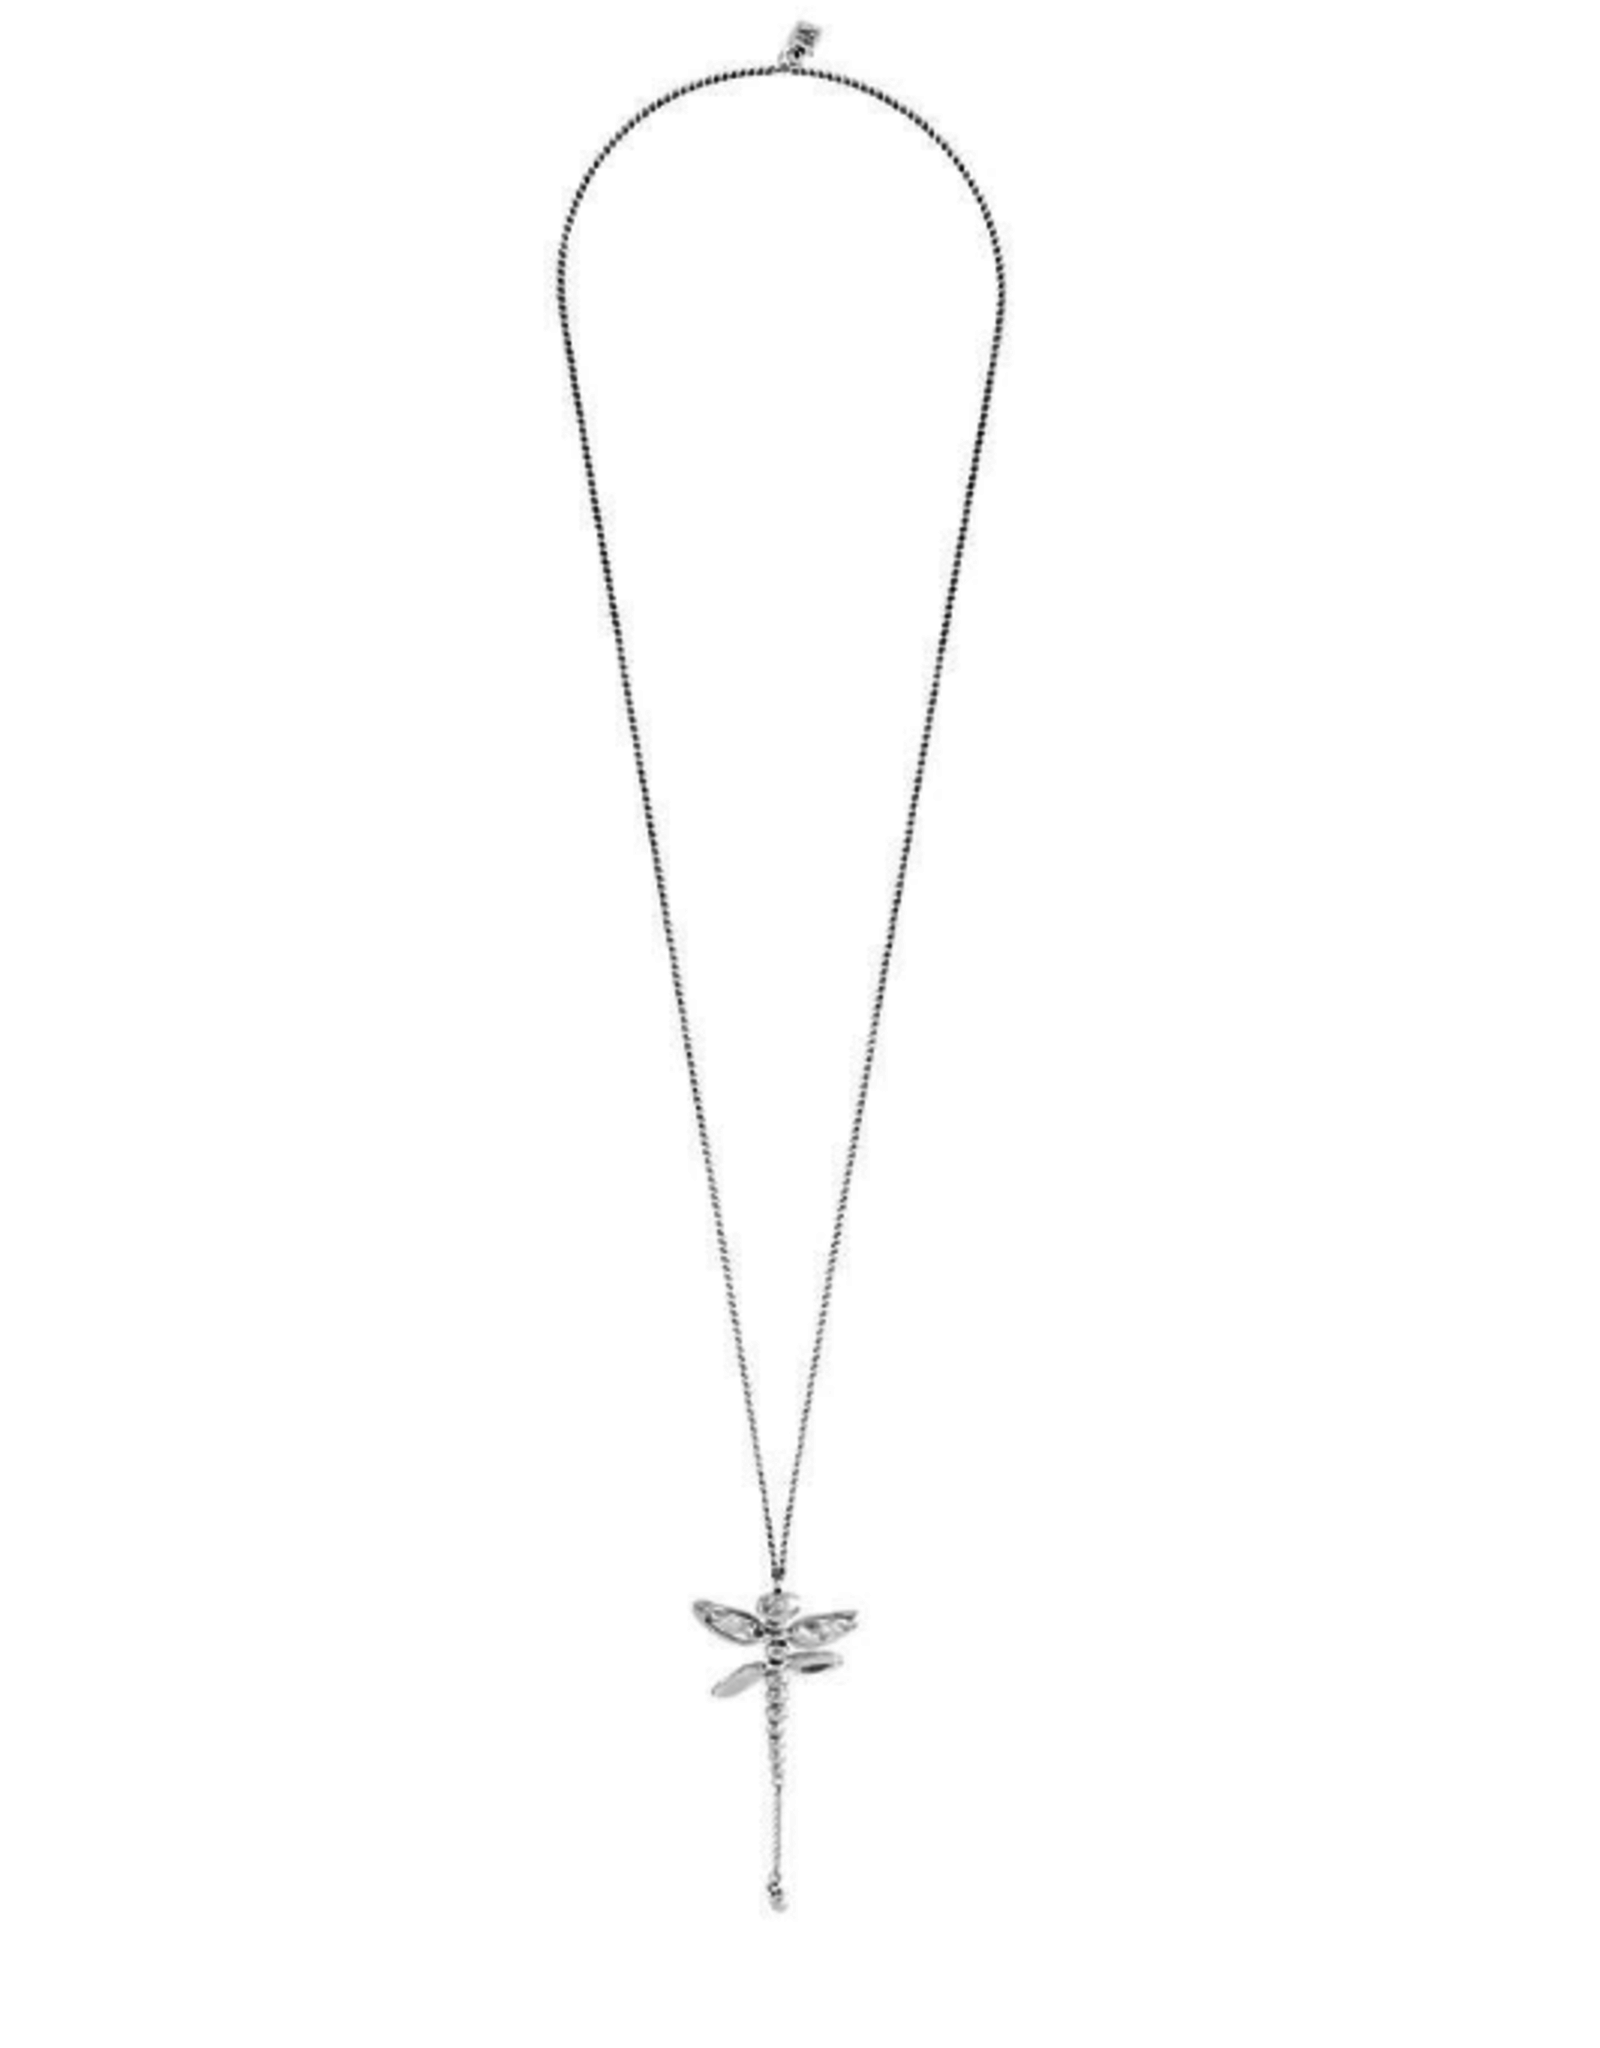 Uno de 50 Uno de 50 Col0976mtl0000u Silver necklace long dragonfly